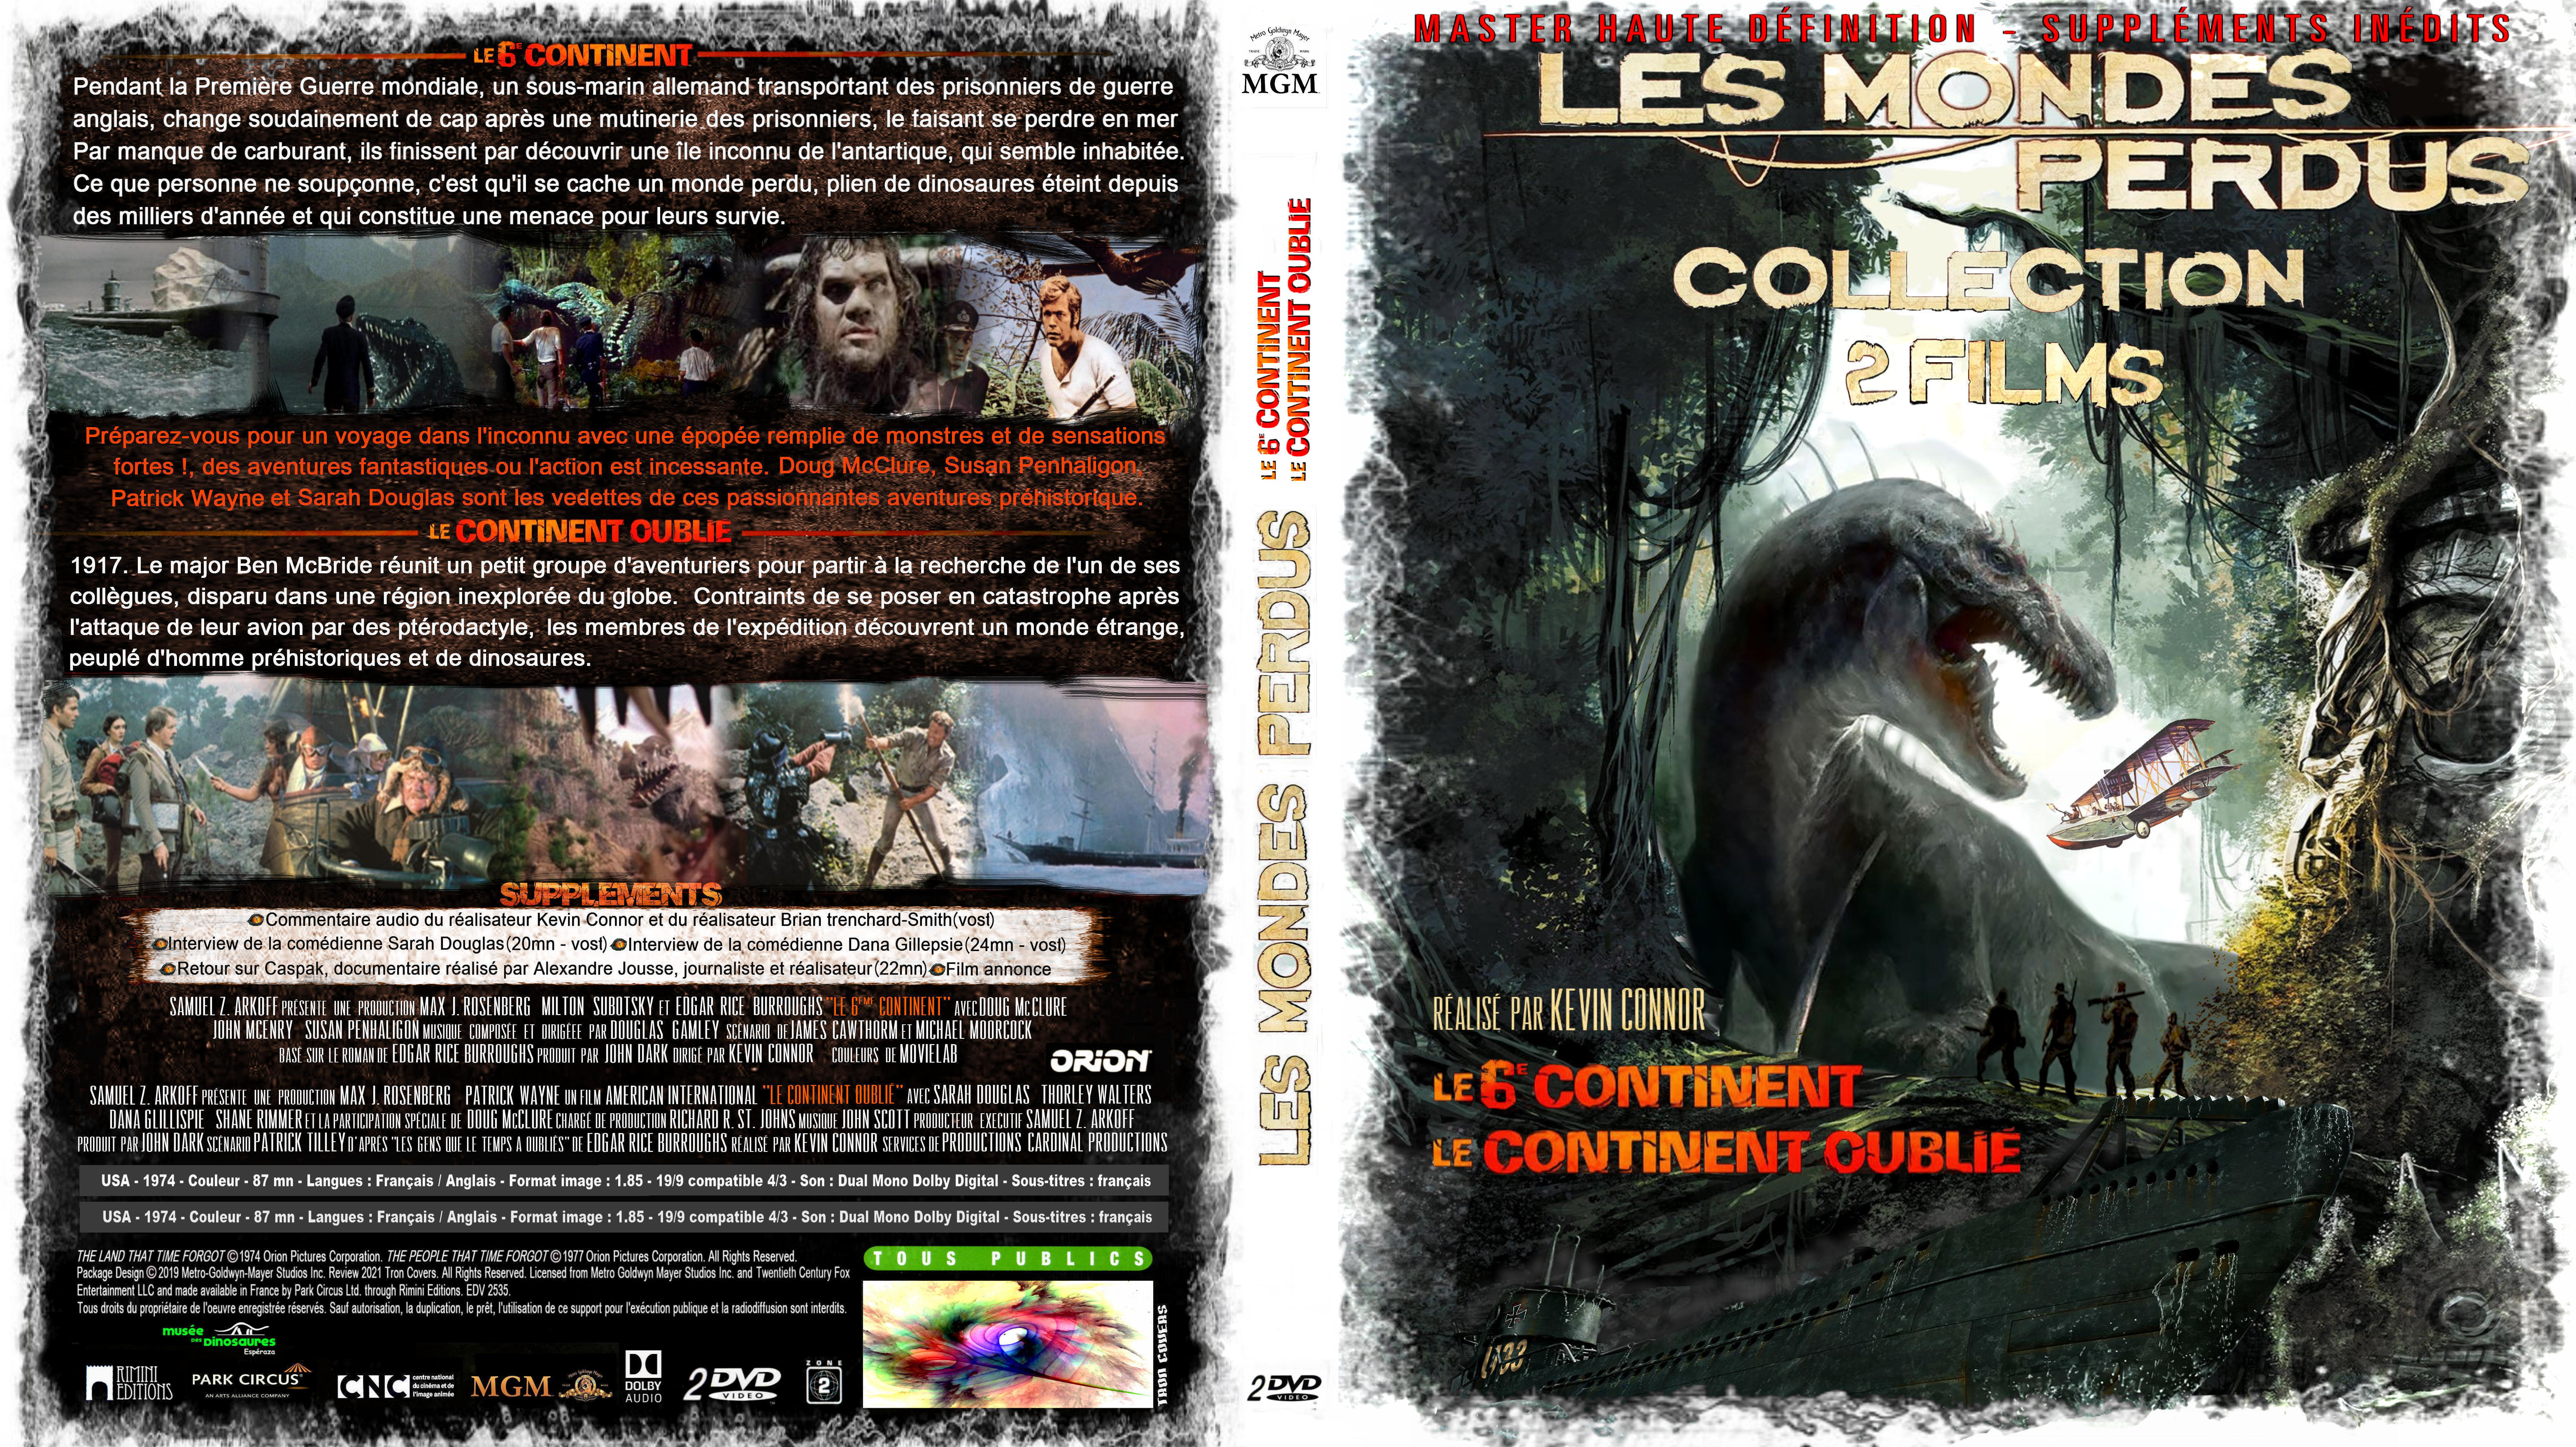 Jaquette DVD Le 6eme continent Le continent oublie COFFRET custom